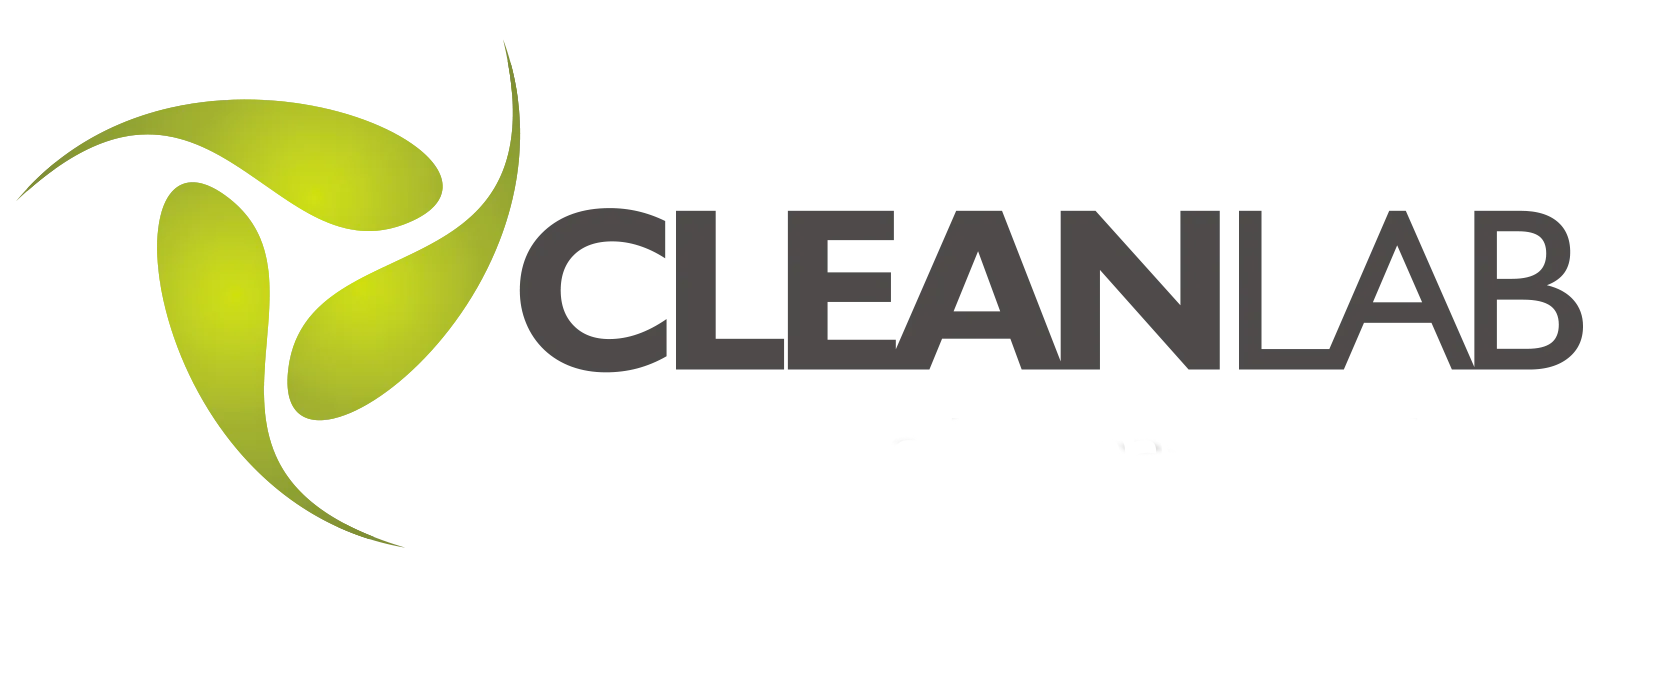 Cleanlab logo 2021r